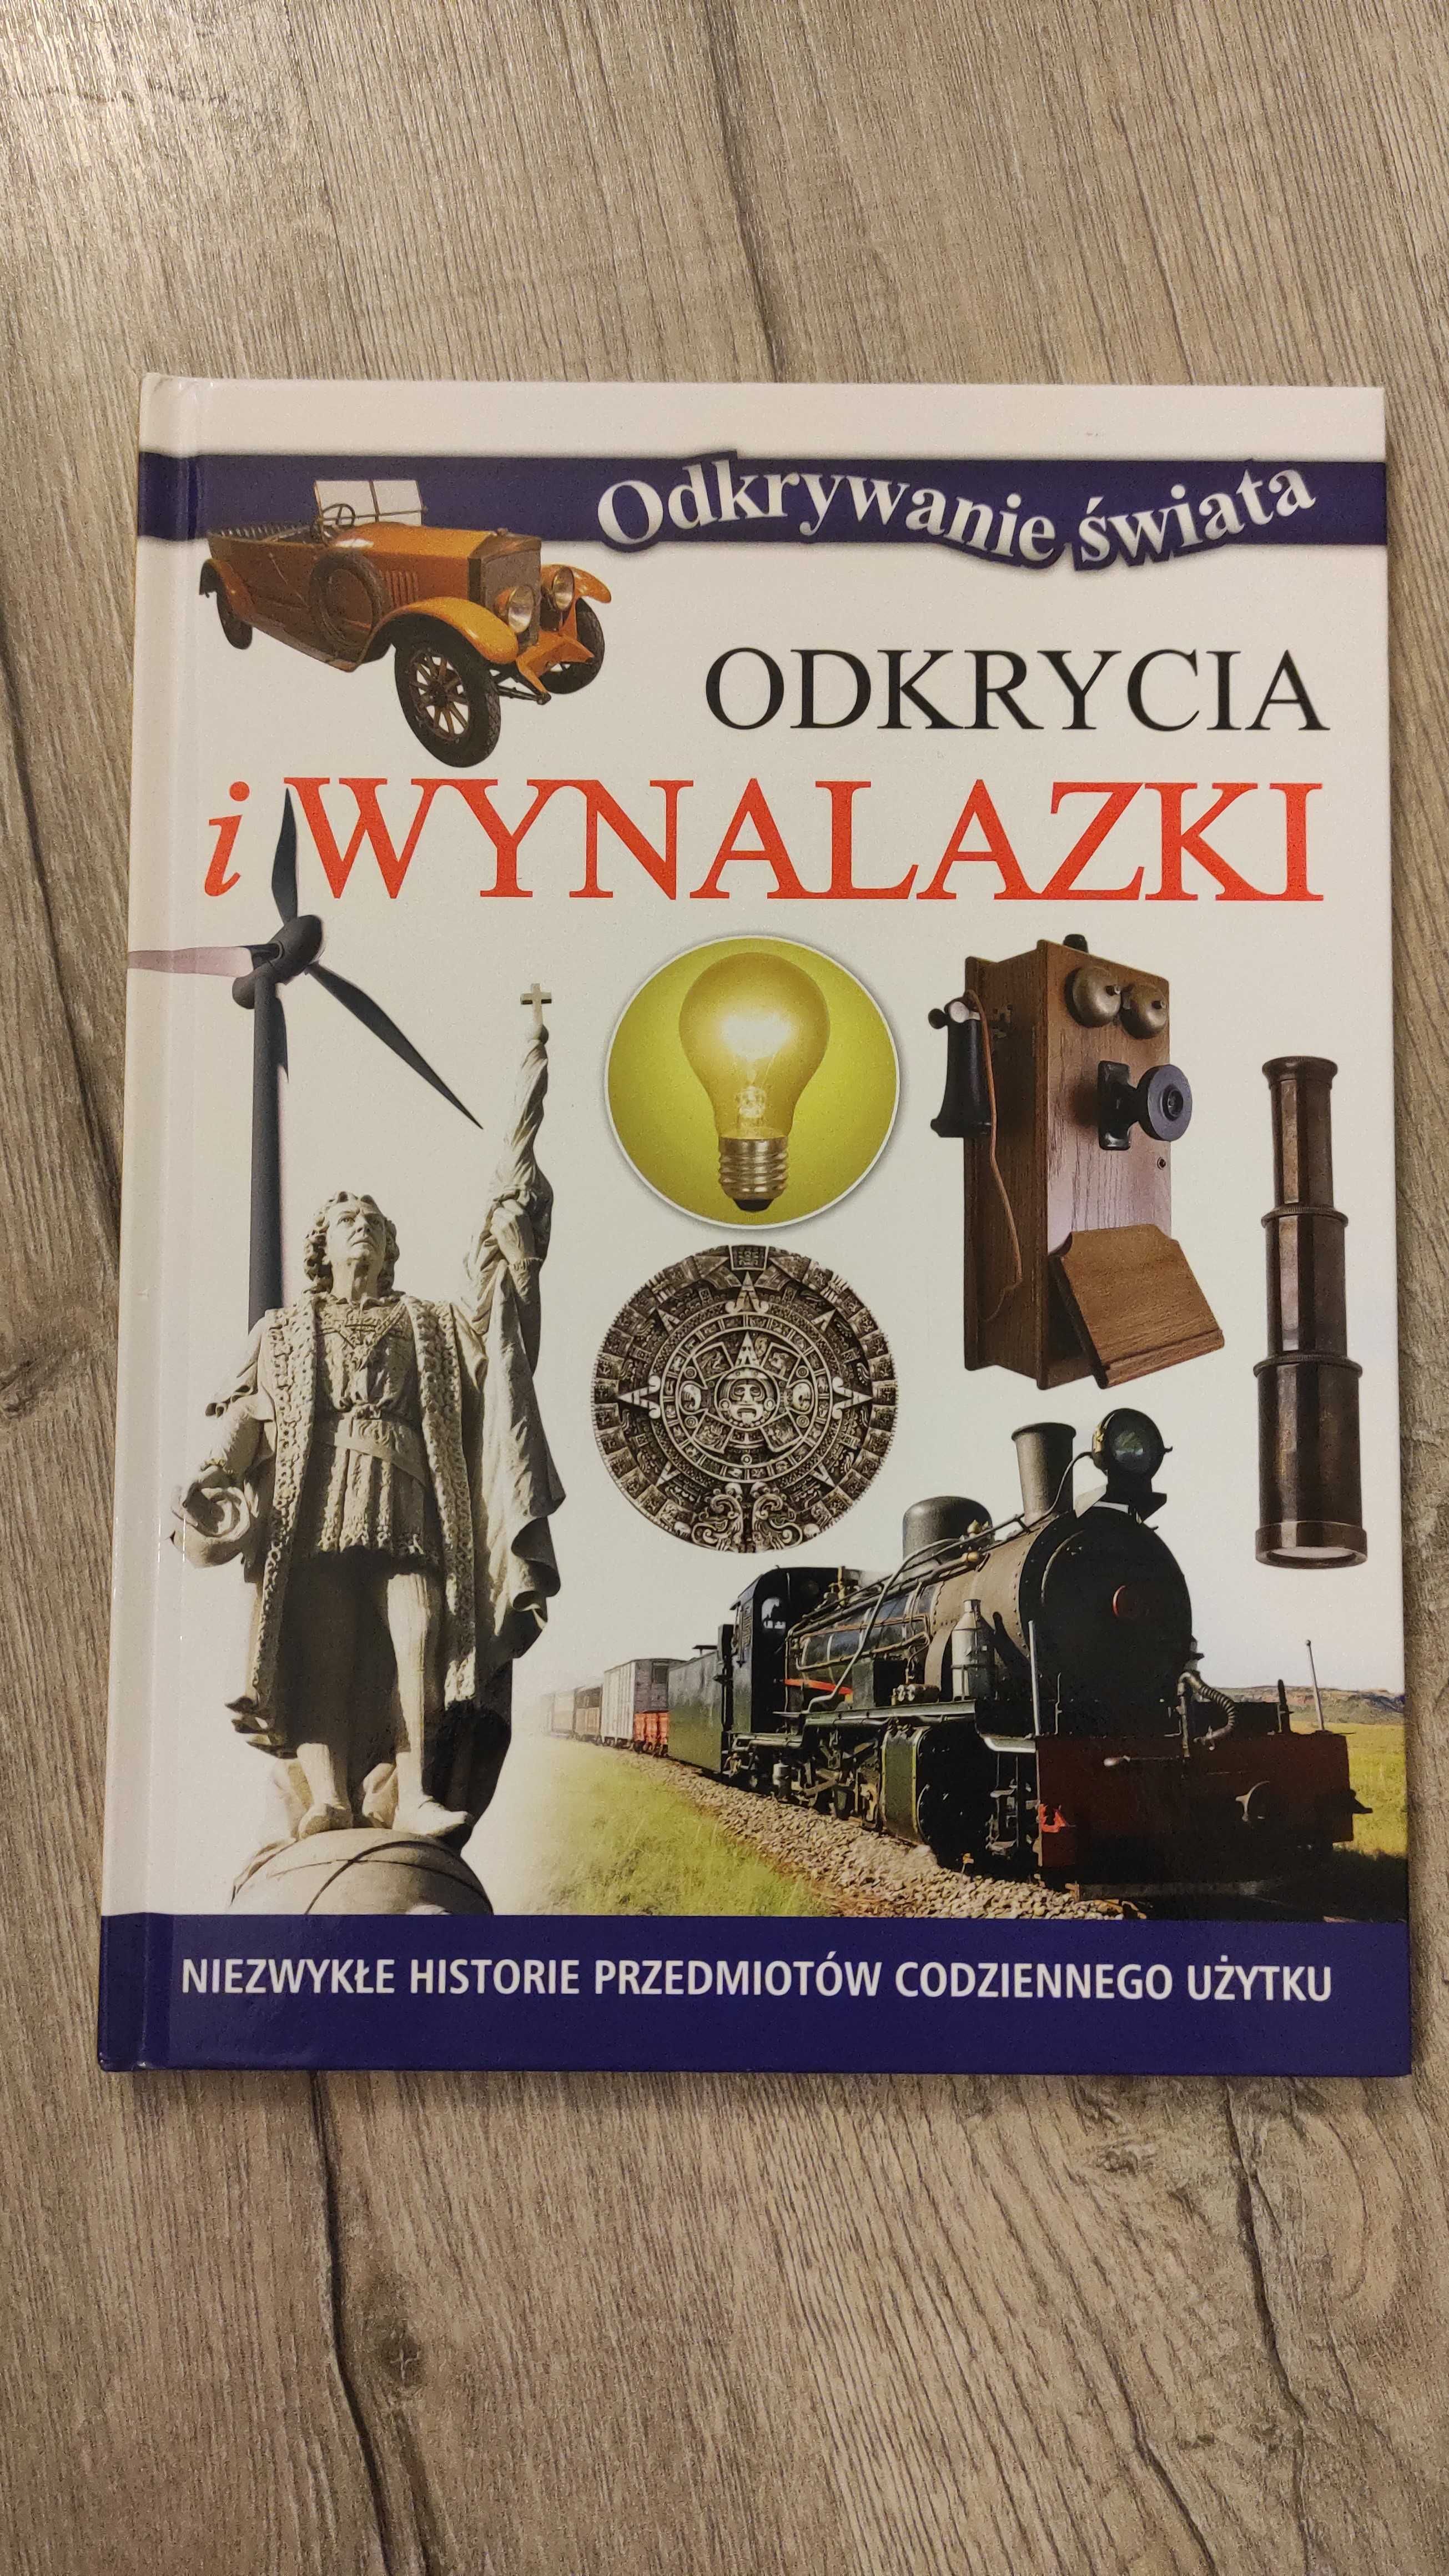 Książki "Encyklopedia Świat w liczbach" i "Odkrycia i wynalazki"